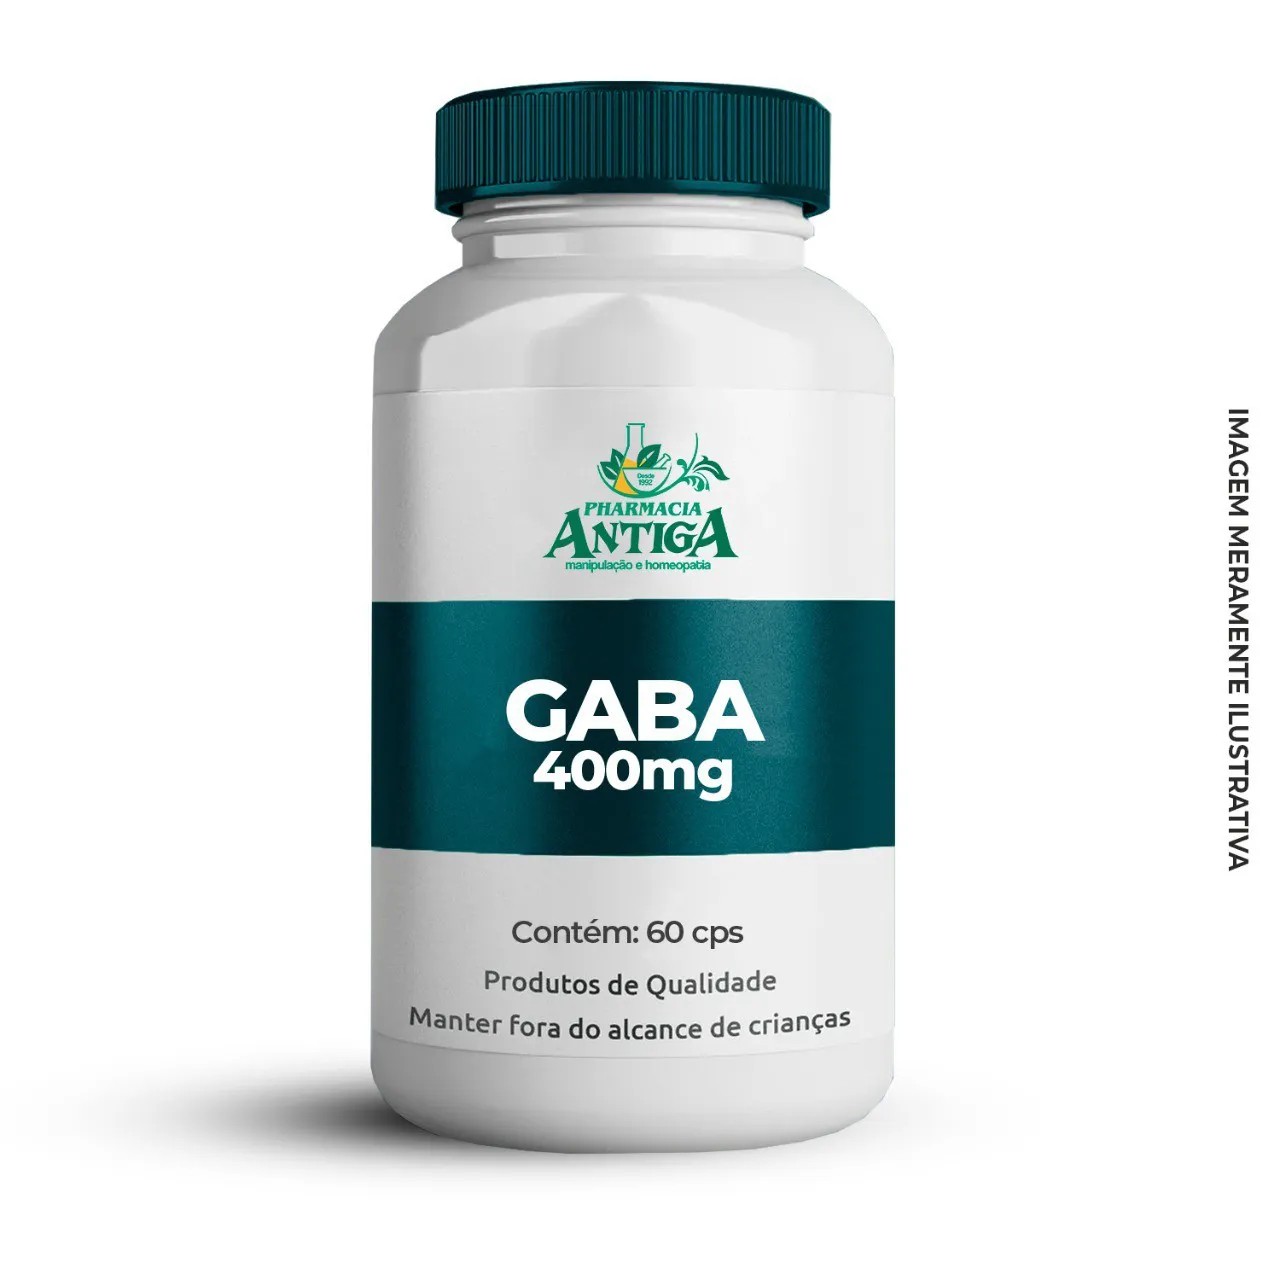 Gaba (Ácido Gama-aminobutírico) 400 mg - 60 cps